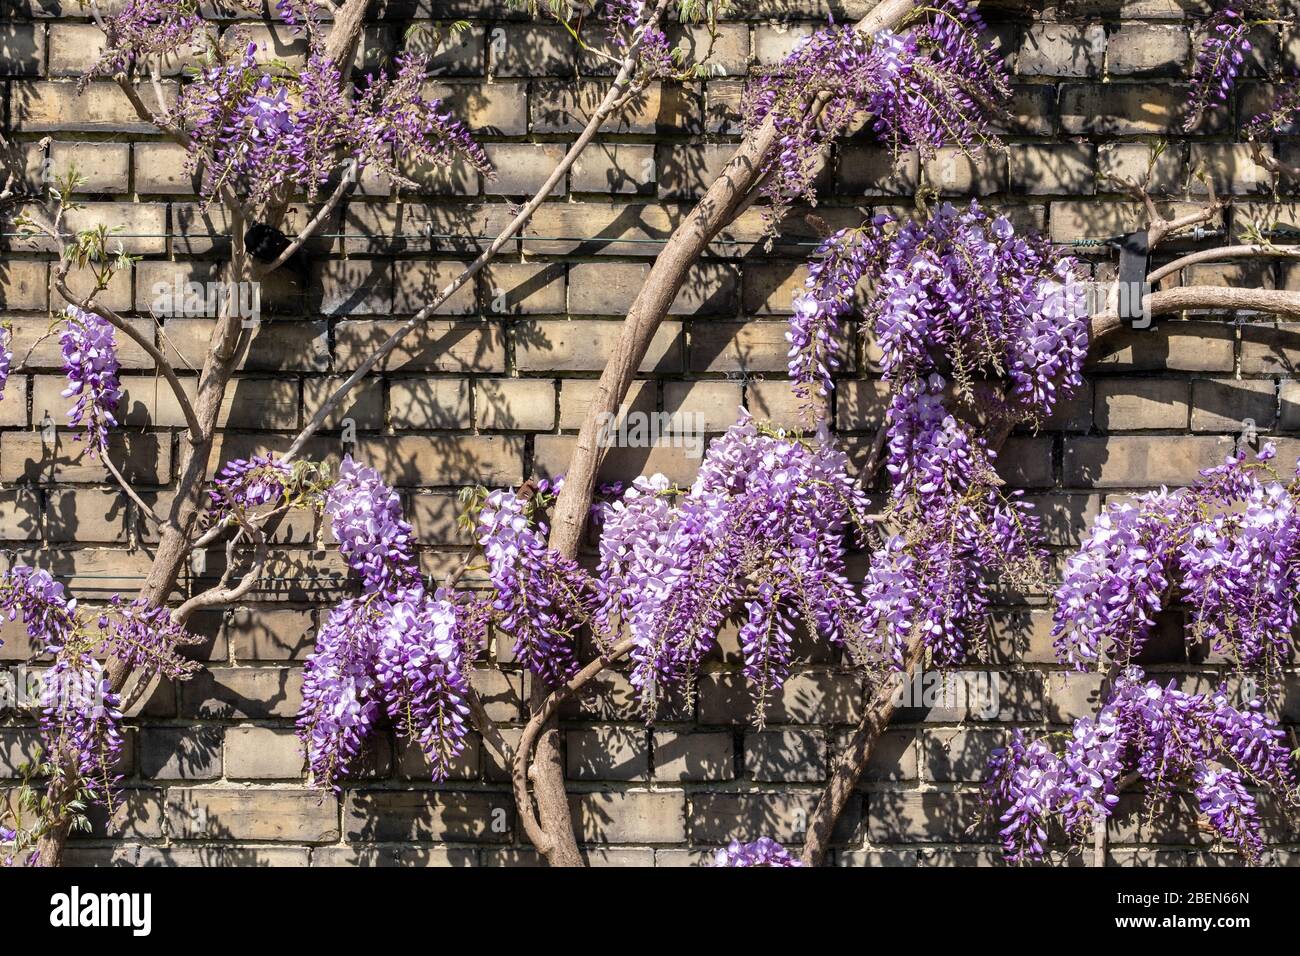 Kletterpflanze mit lila Blüten, die an einer Wand gegenüber dem See im  Pinner Memorial Park, Pinner, Middlesex, im Nordwesten Londons wächst  Stockfotografie - Alamy